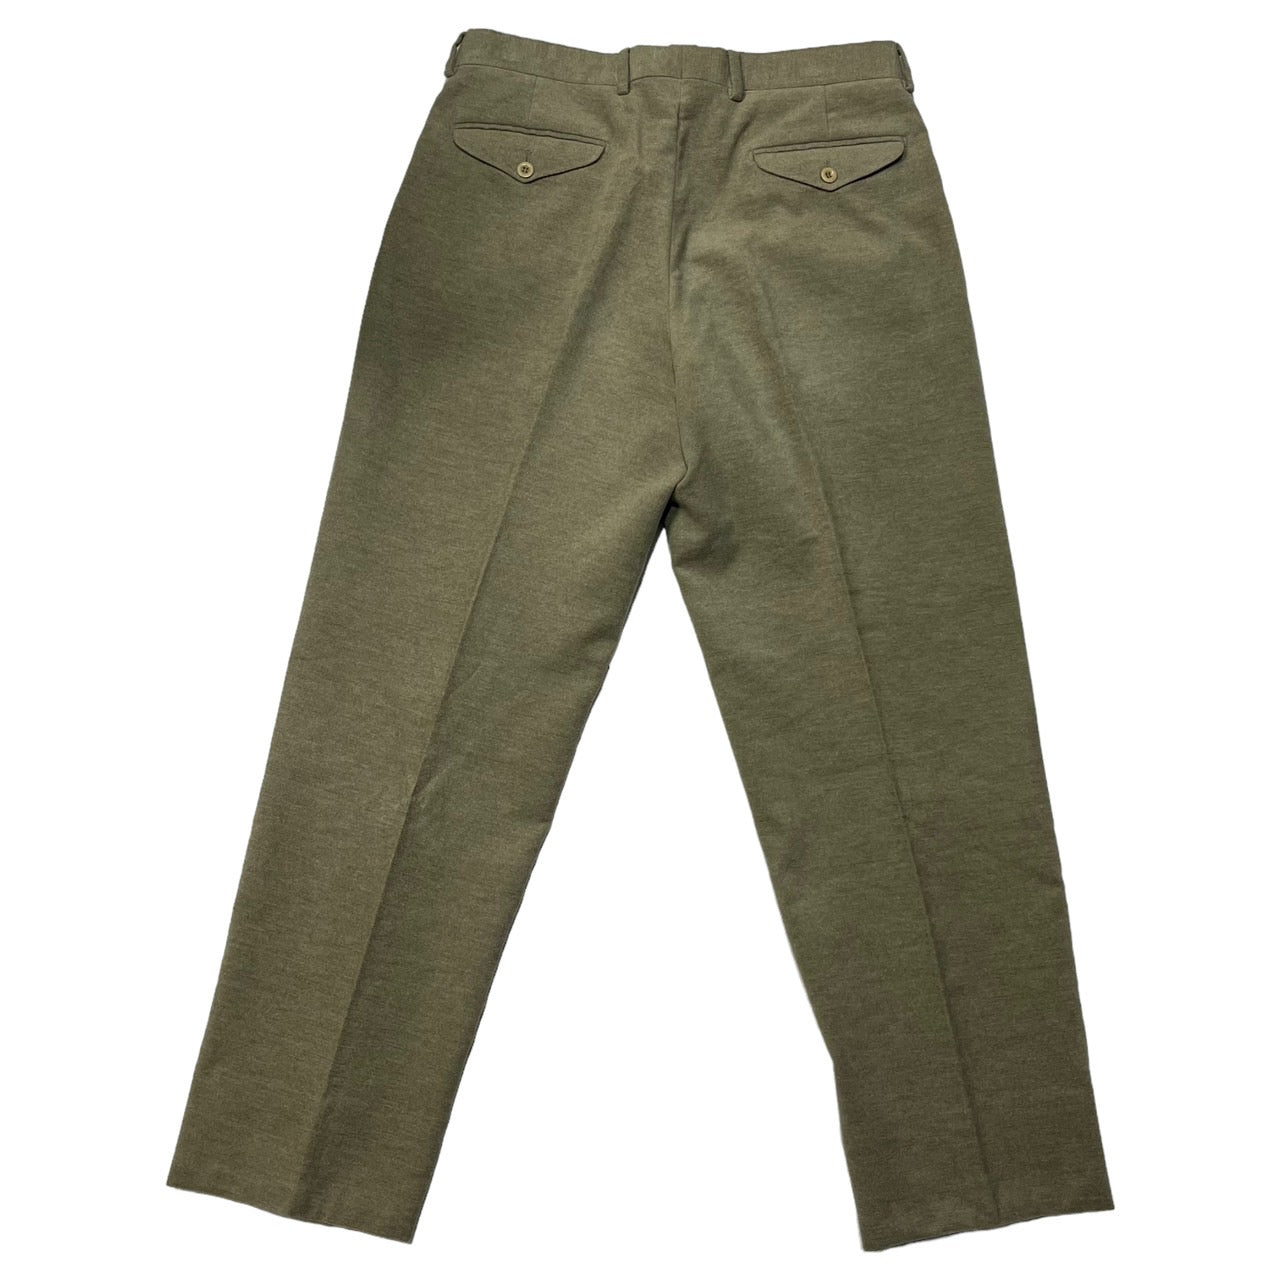 HERMES(エルメス) suede touch trousers/スウェードタッチトラウザー/パンツ/スラックス 52(XLサイズ程度)